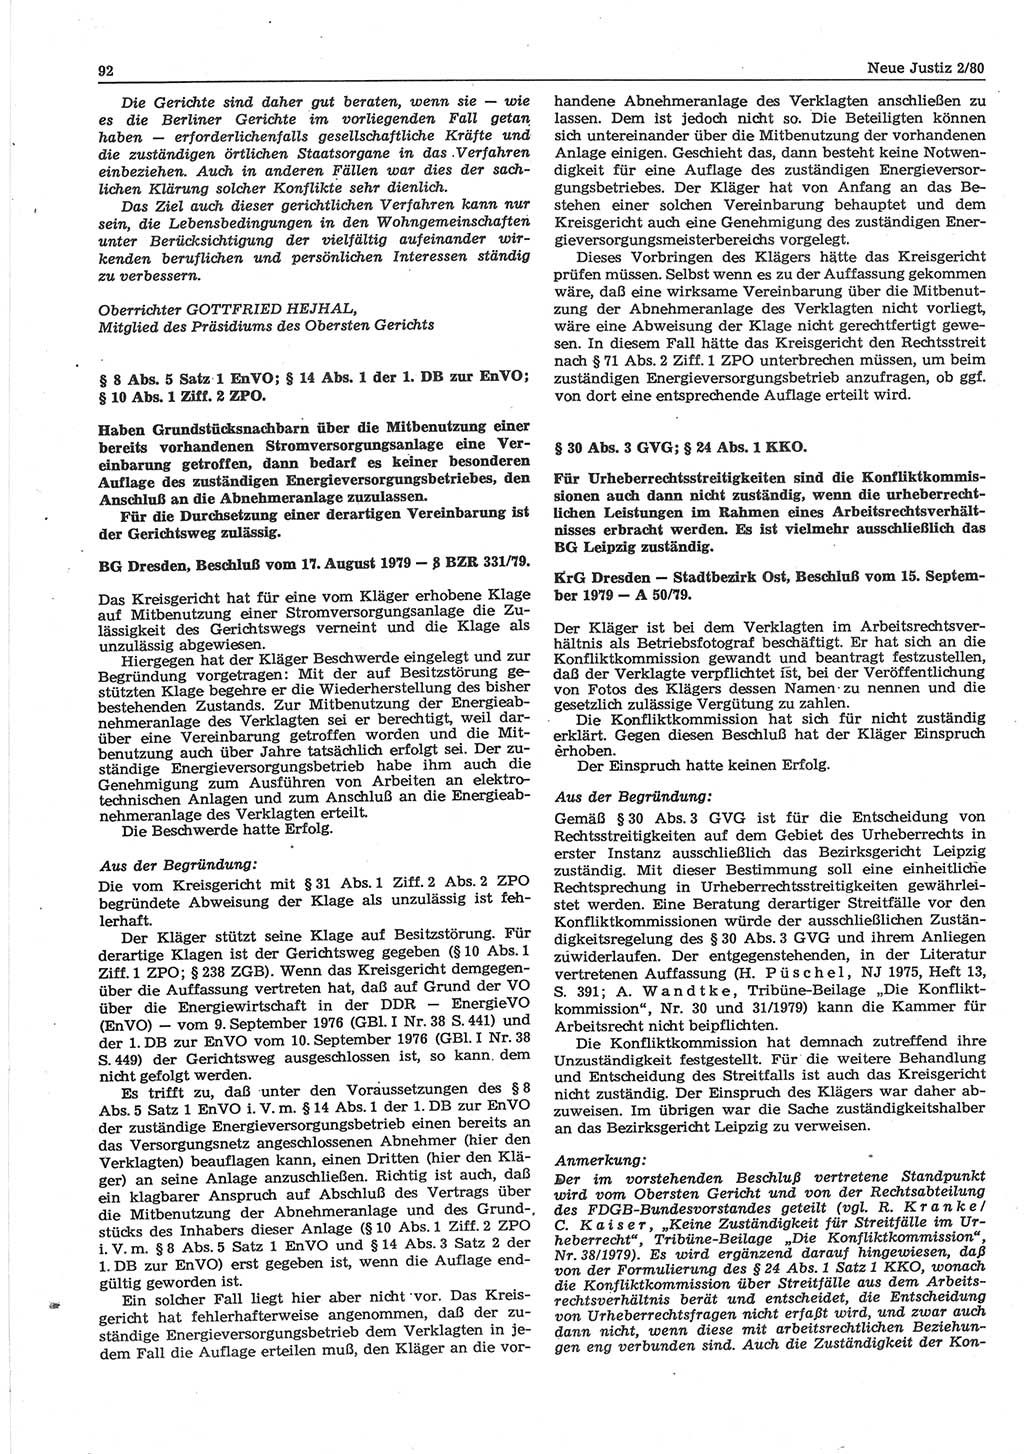 Neue Justiz (NJ), Zeitschrift für sozialistisches Recht und Gesetzlichkeit [Deutsche Demokratische Republik (DDR)], 34. Jahrgang 1980, Seite 92 (NJ DDR 1980, S. 92)